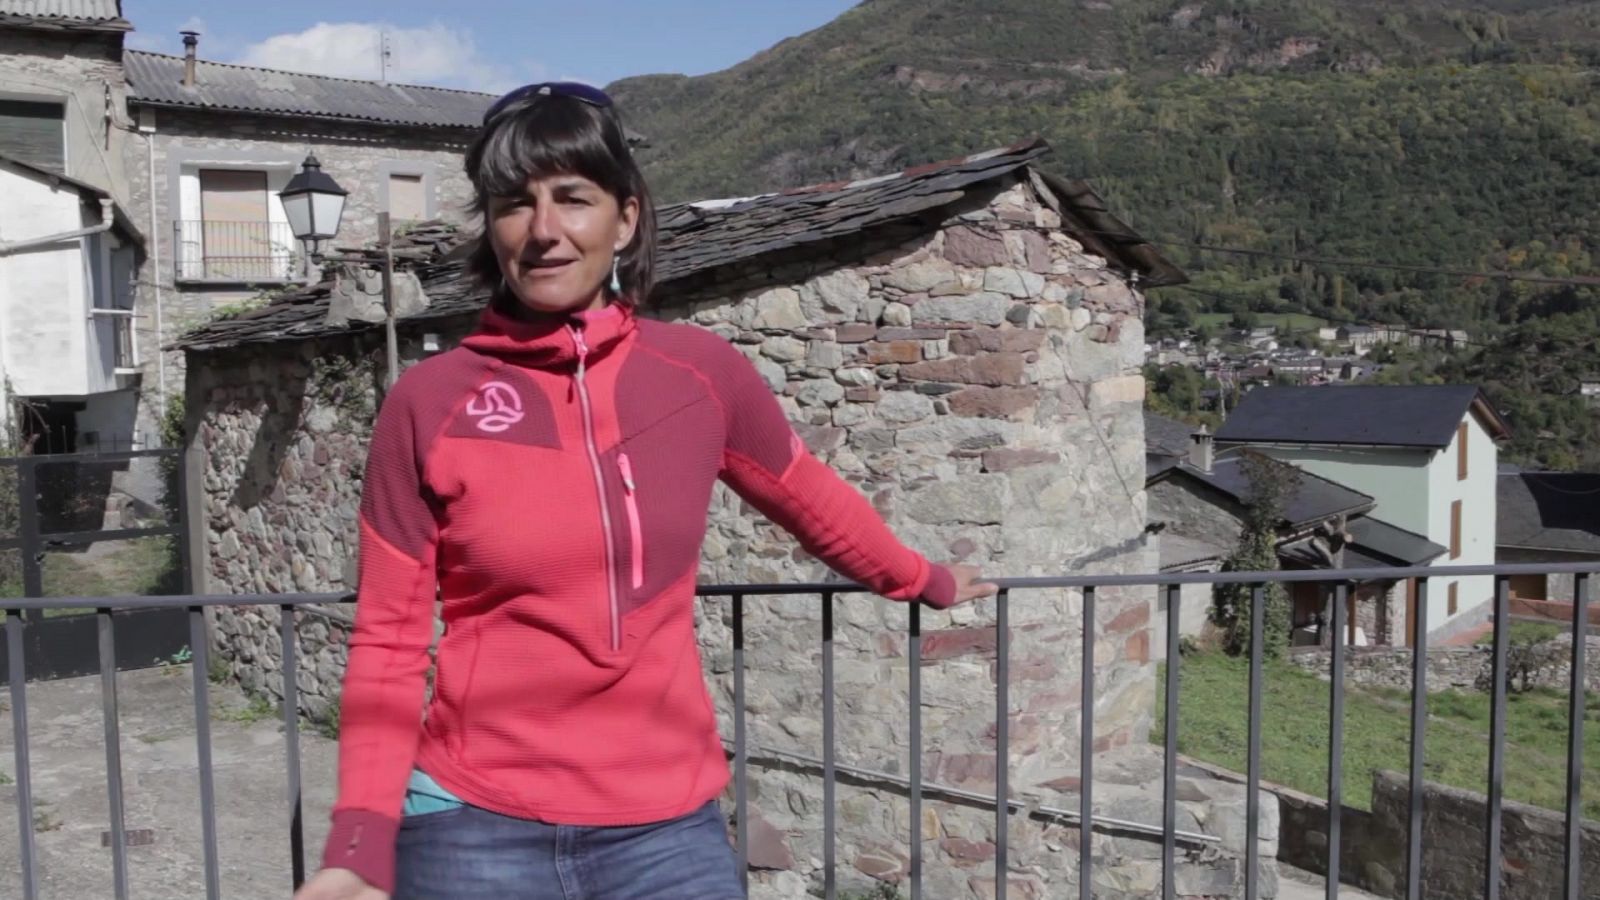 Deportes de montaña - Serie Mujer y deporte FEDME "Mujer y deporte: Doce años ayudando a crecer a las montañeras" - RTVE.es